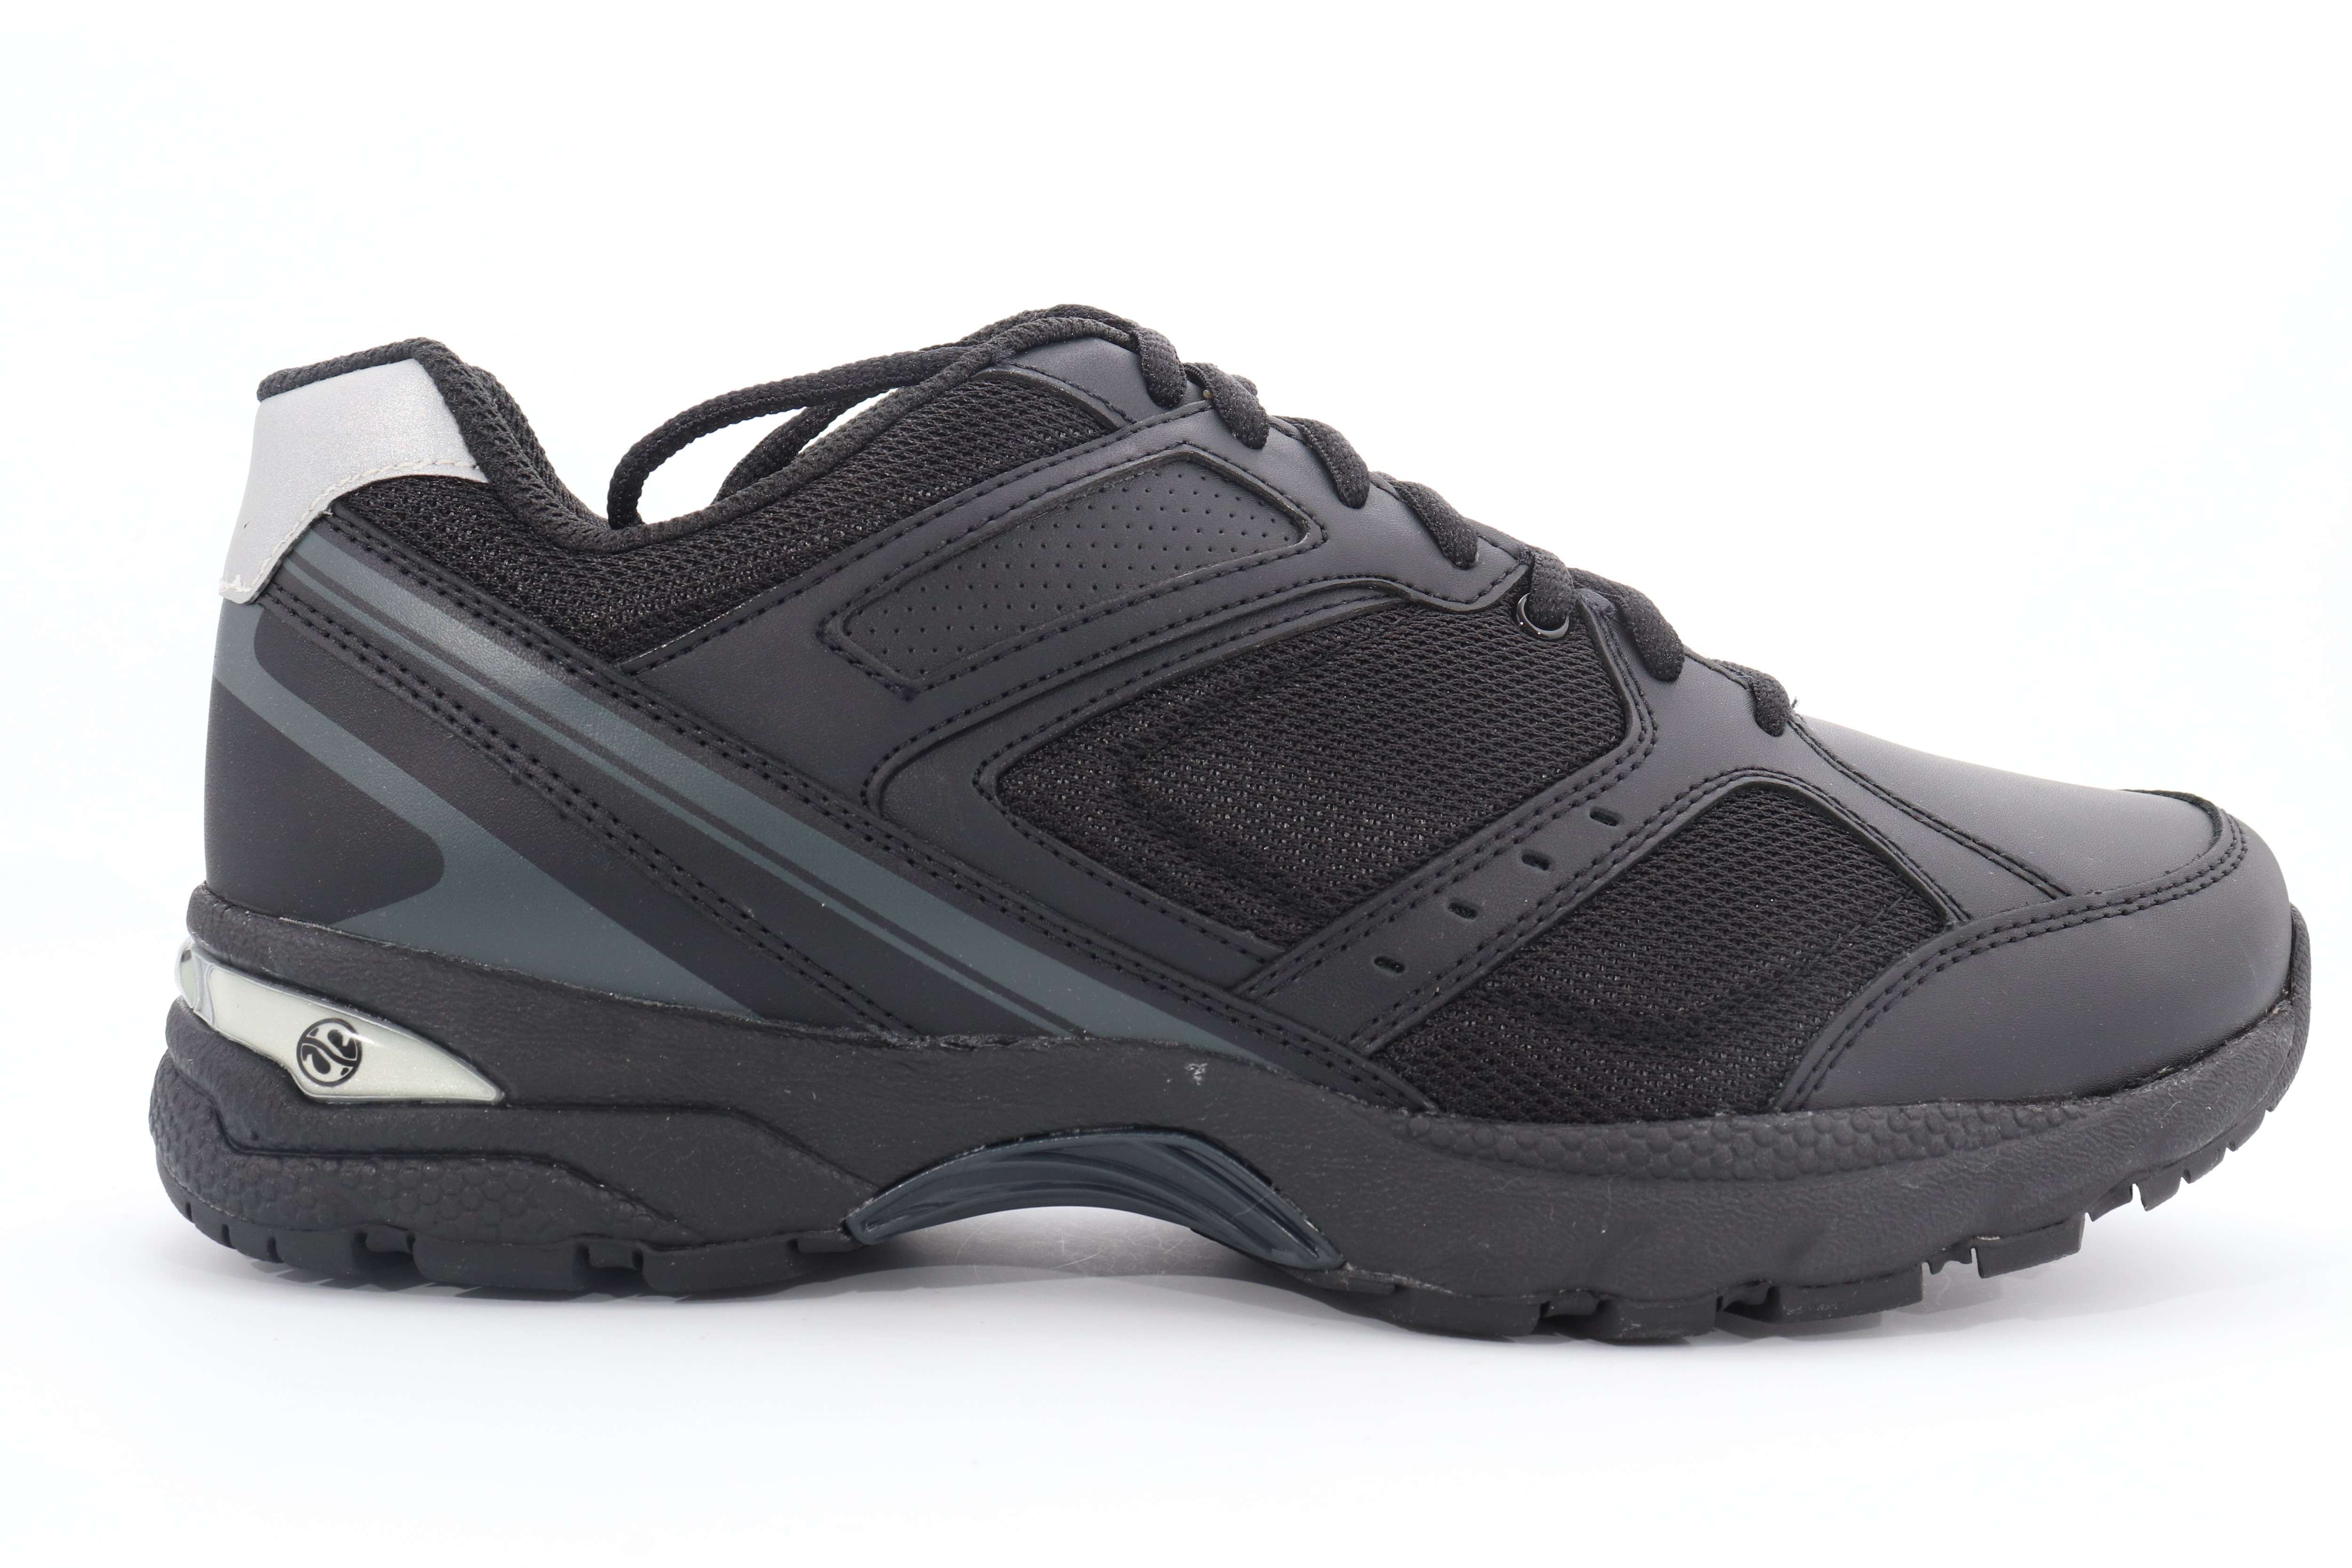 Footworks George Foreman Sneakers Black Men's Size US 10.5 Medium () | eBay